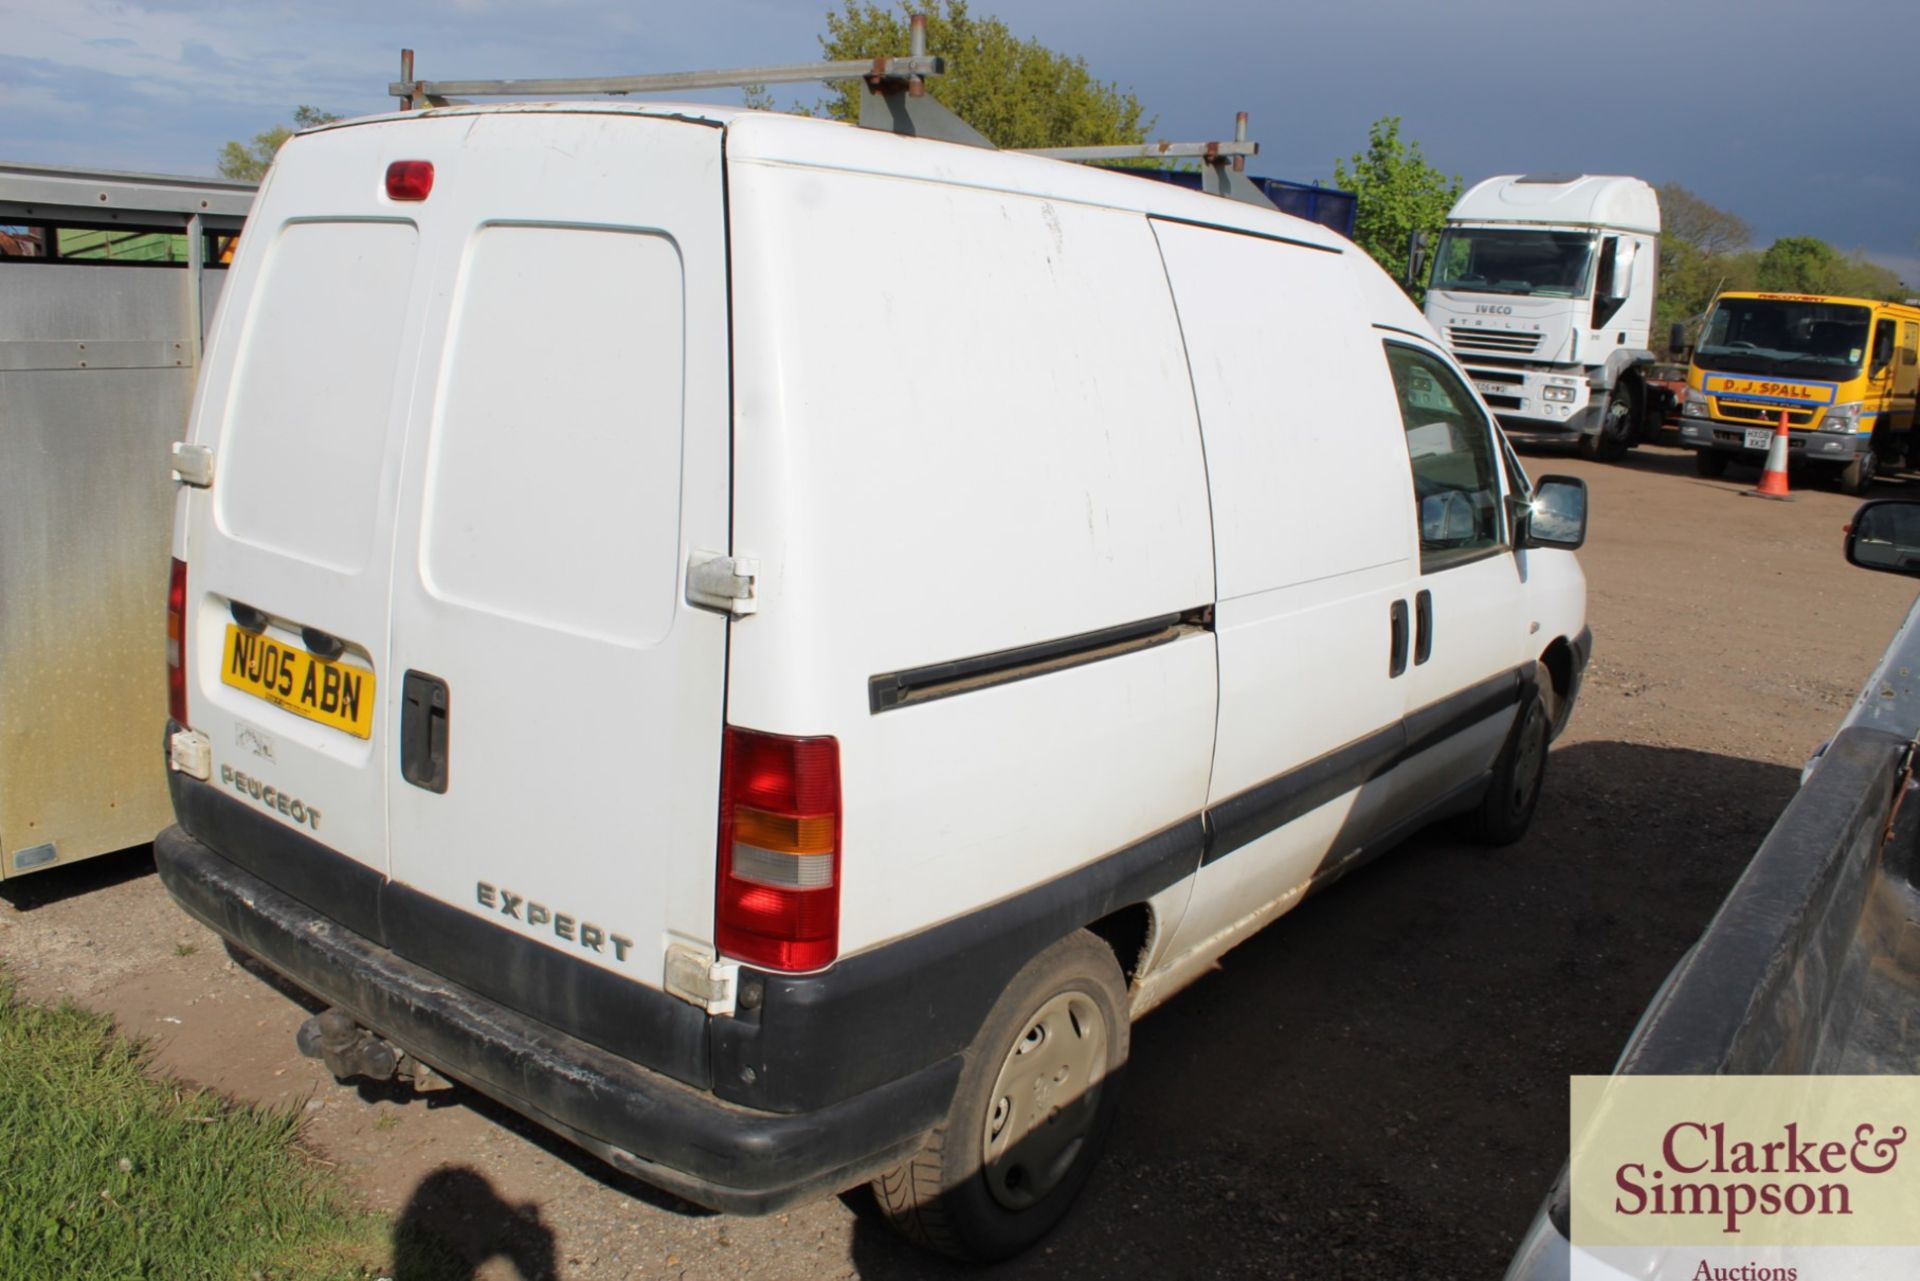 Peugeot Expert van. Registration NU05 ABN. Date of first registration 03/2005. c.160,000 miles. - Image 4 of 23